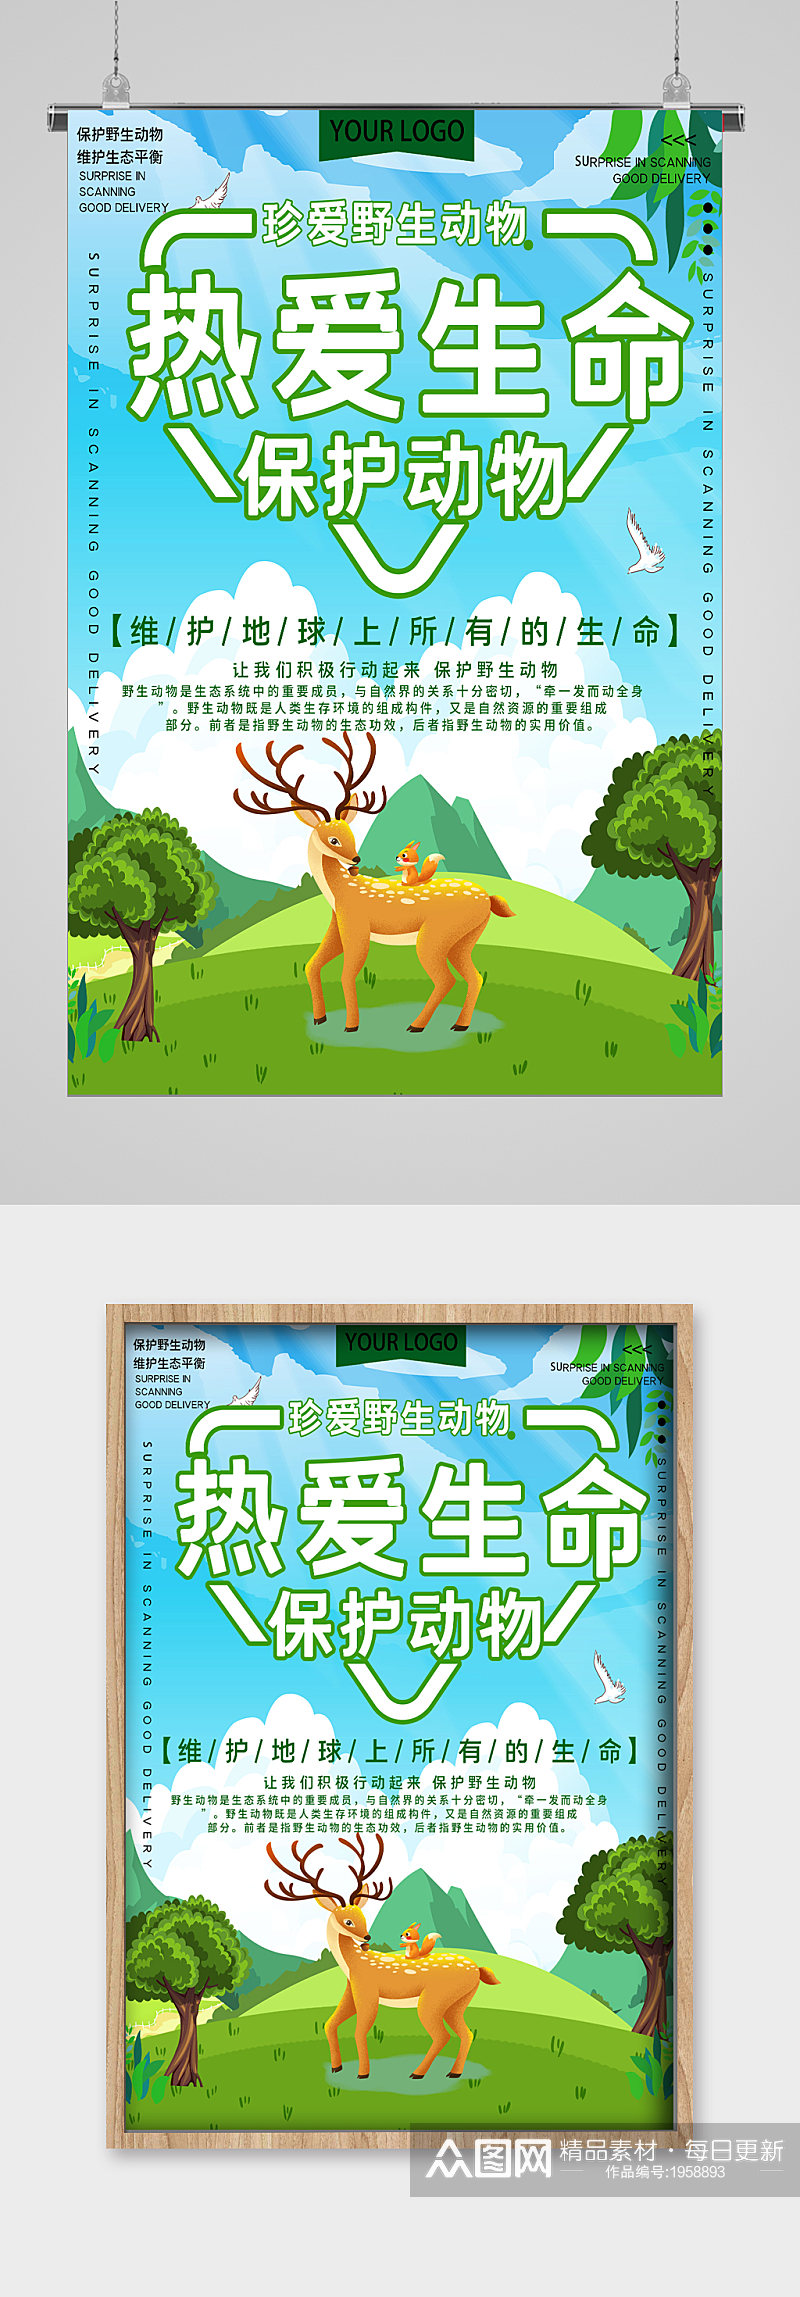 世界动物日麋鹿的家宣传海报素材